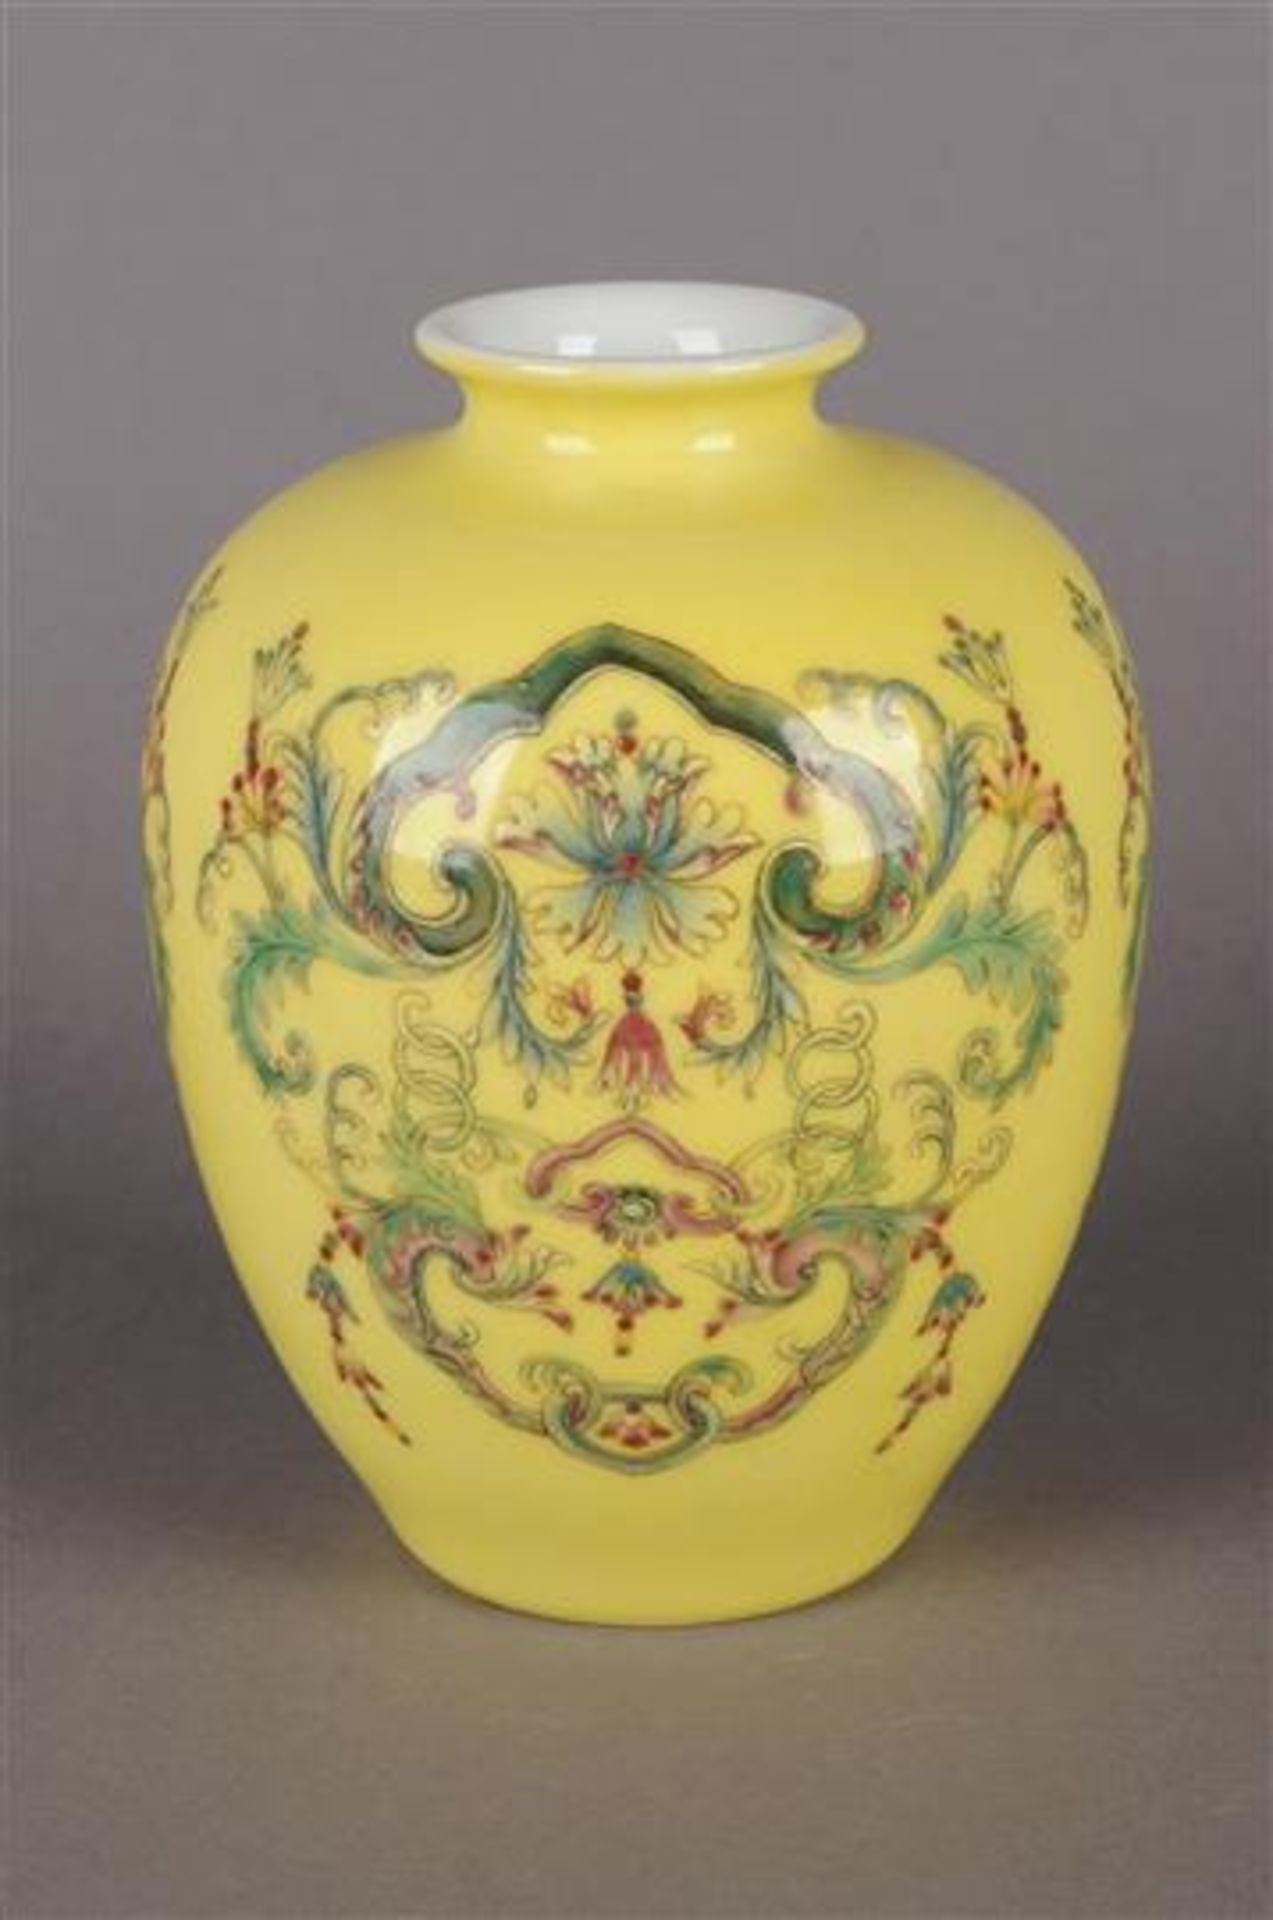 Polychroom porseleinen vaas met decor van bloemen en guirlandes, gemerkt met zegelmerk, China 20e